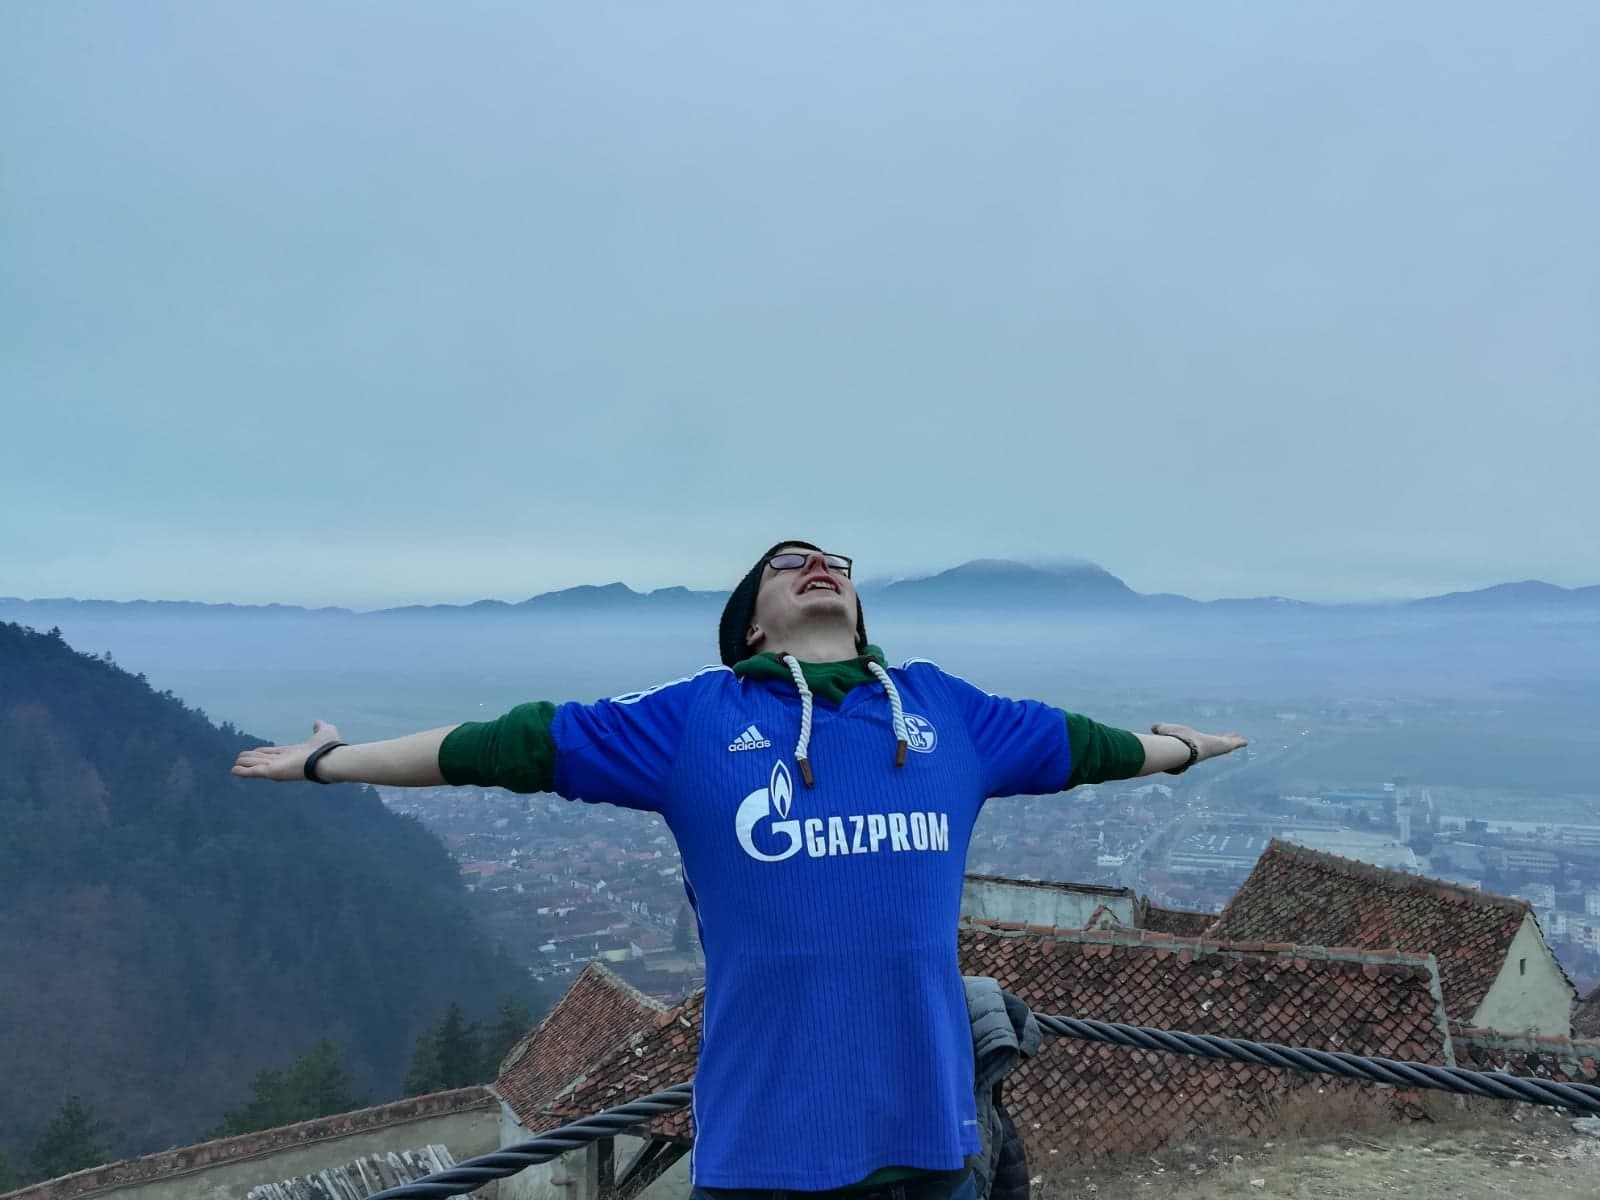 Ein Mann in einem Schalke 04 Trikot posiert mit weit geöffneten Armen auf einem Dach. Im Hintergrund ist eine von Bergen umgebene und in Nebel getauchte Stadt.